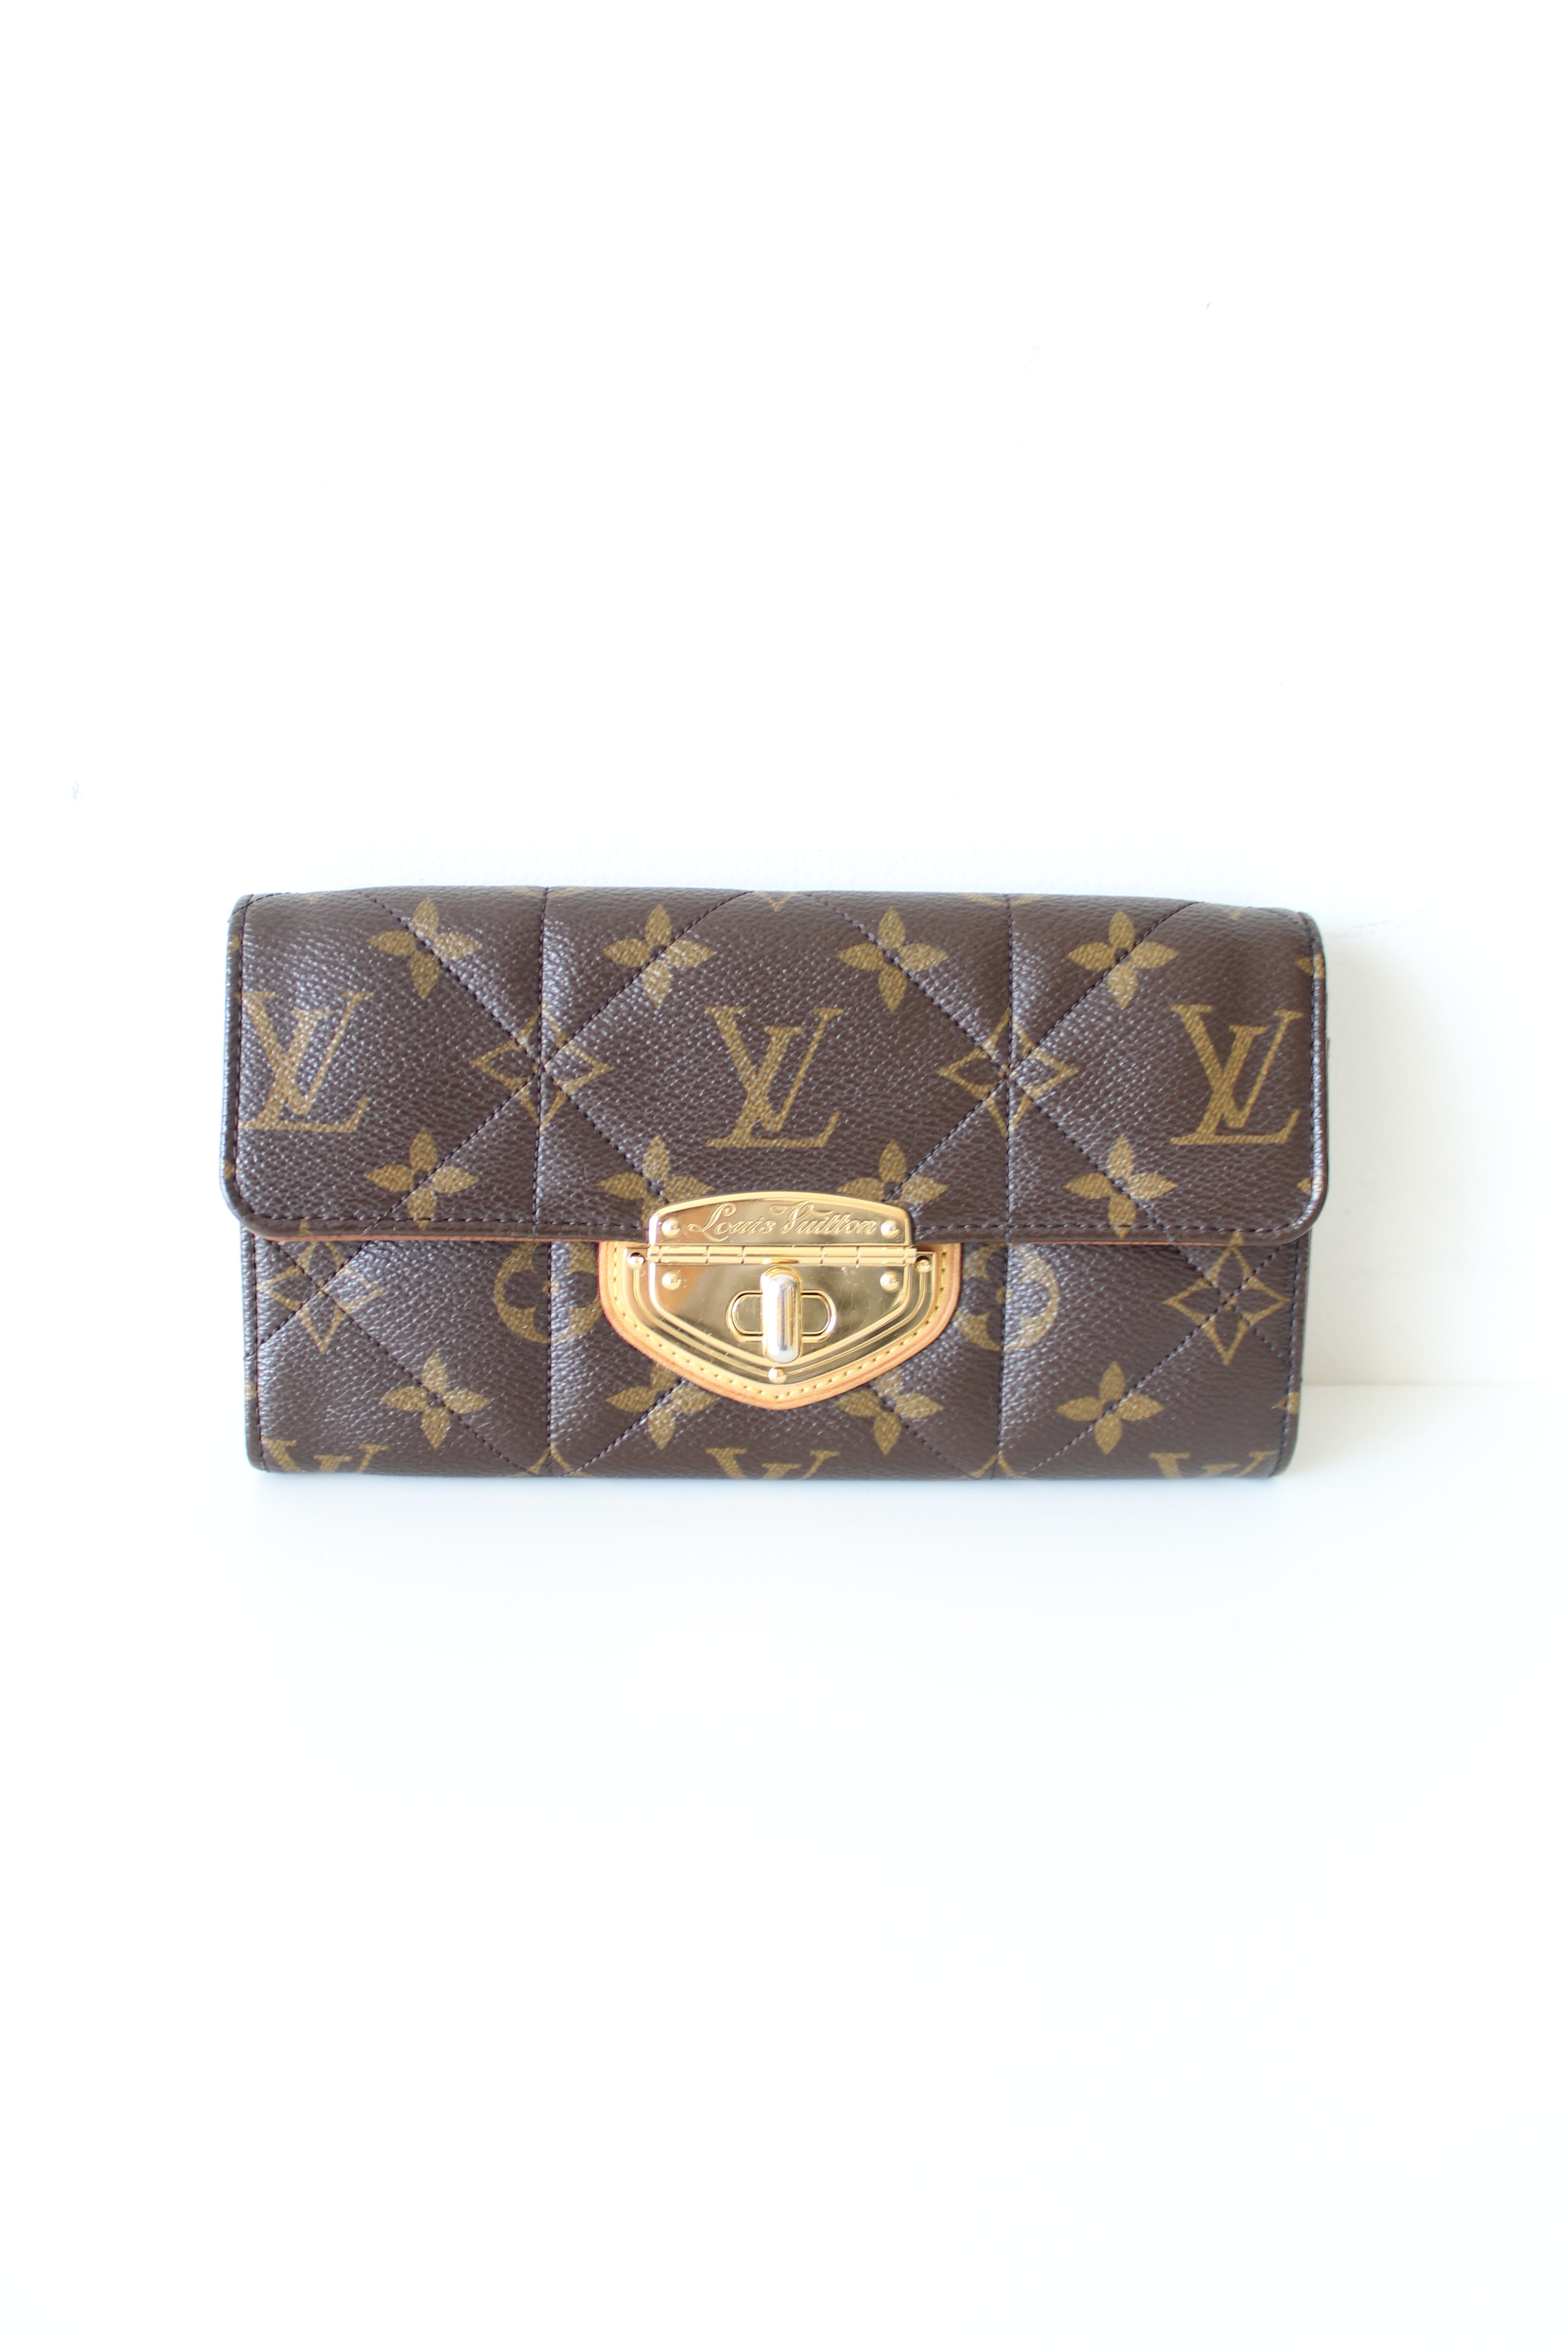 Louis Vuitton Portefeuille Sarah Etoile Monogram Long Wallet for